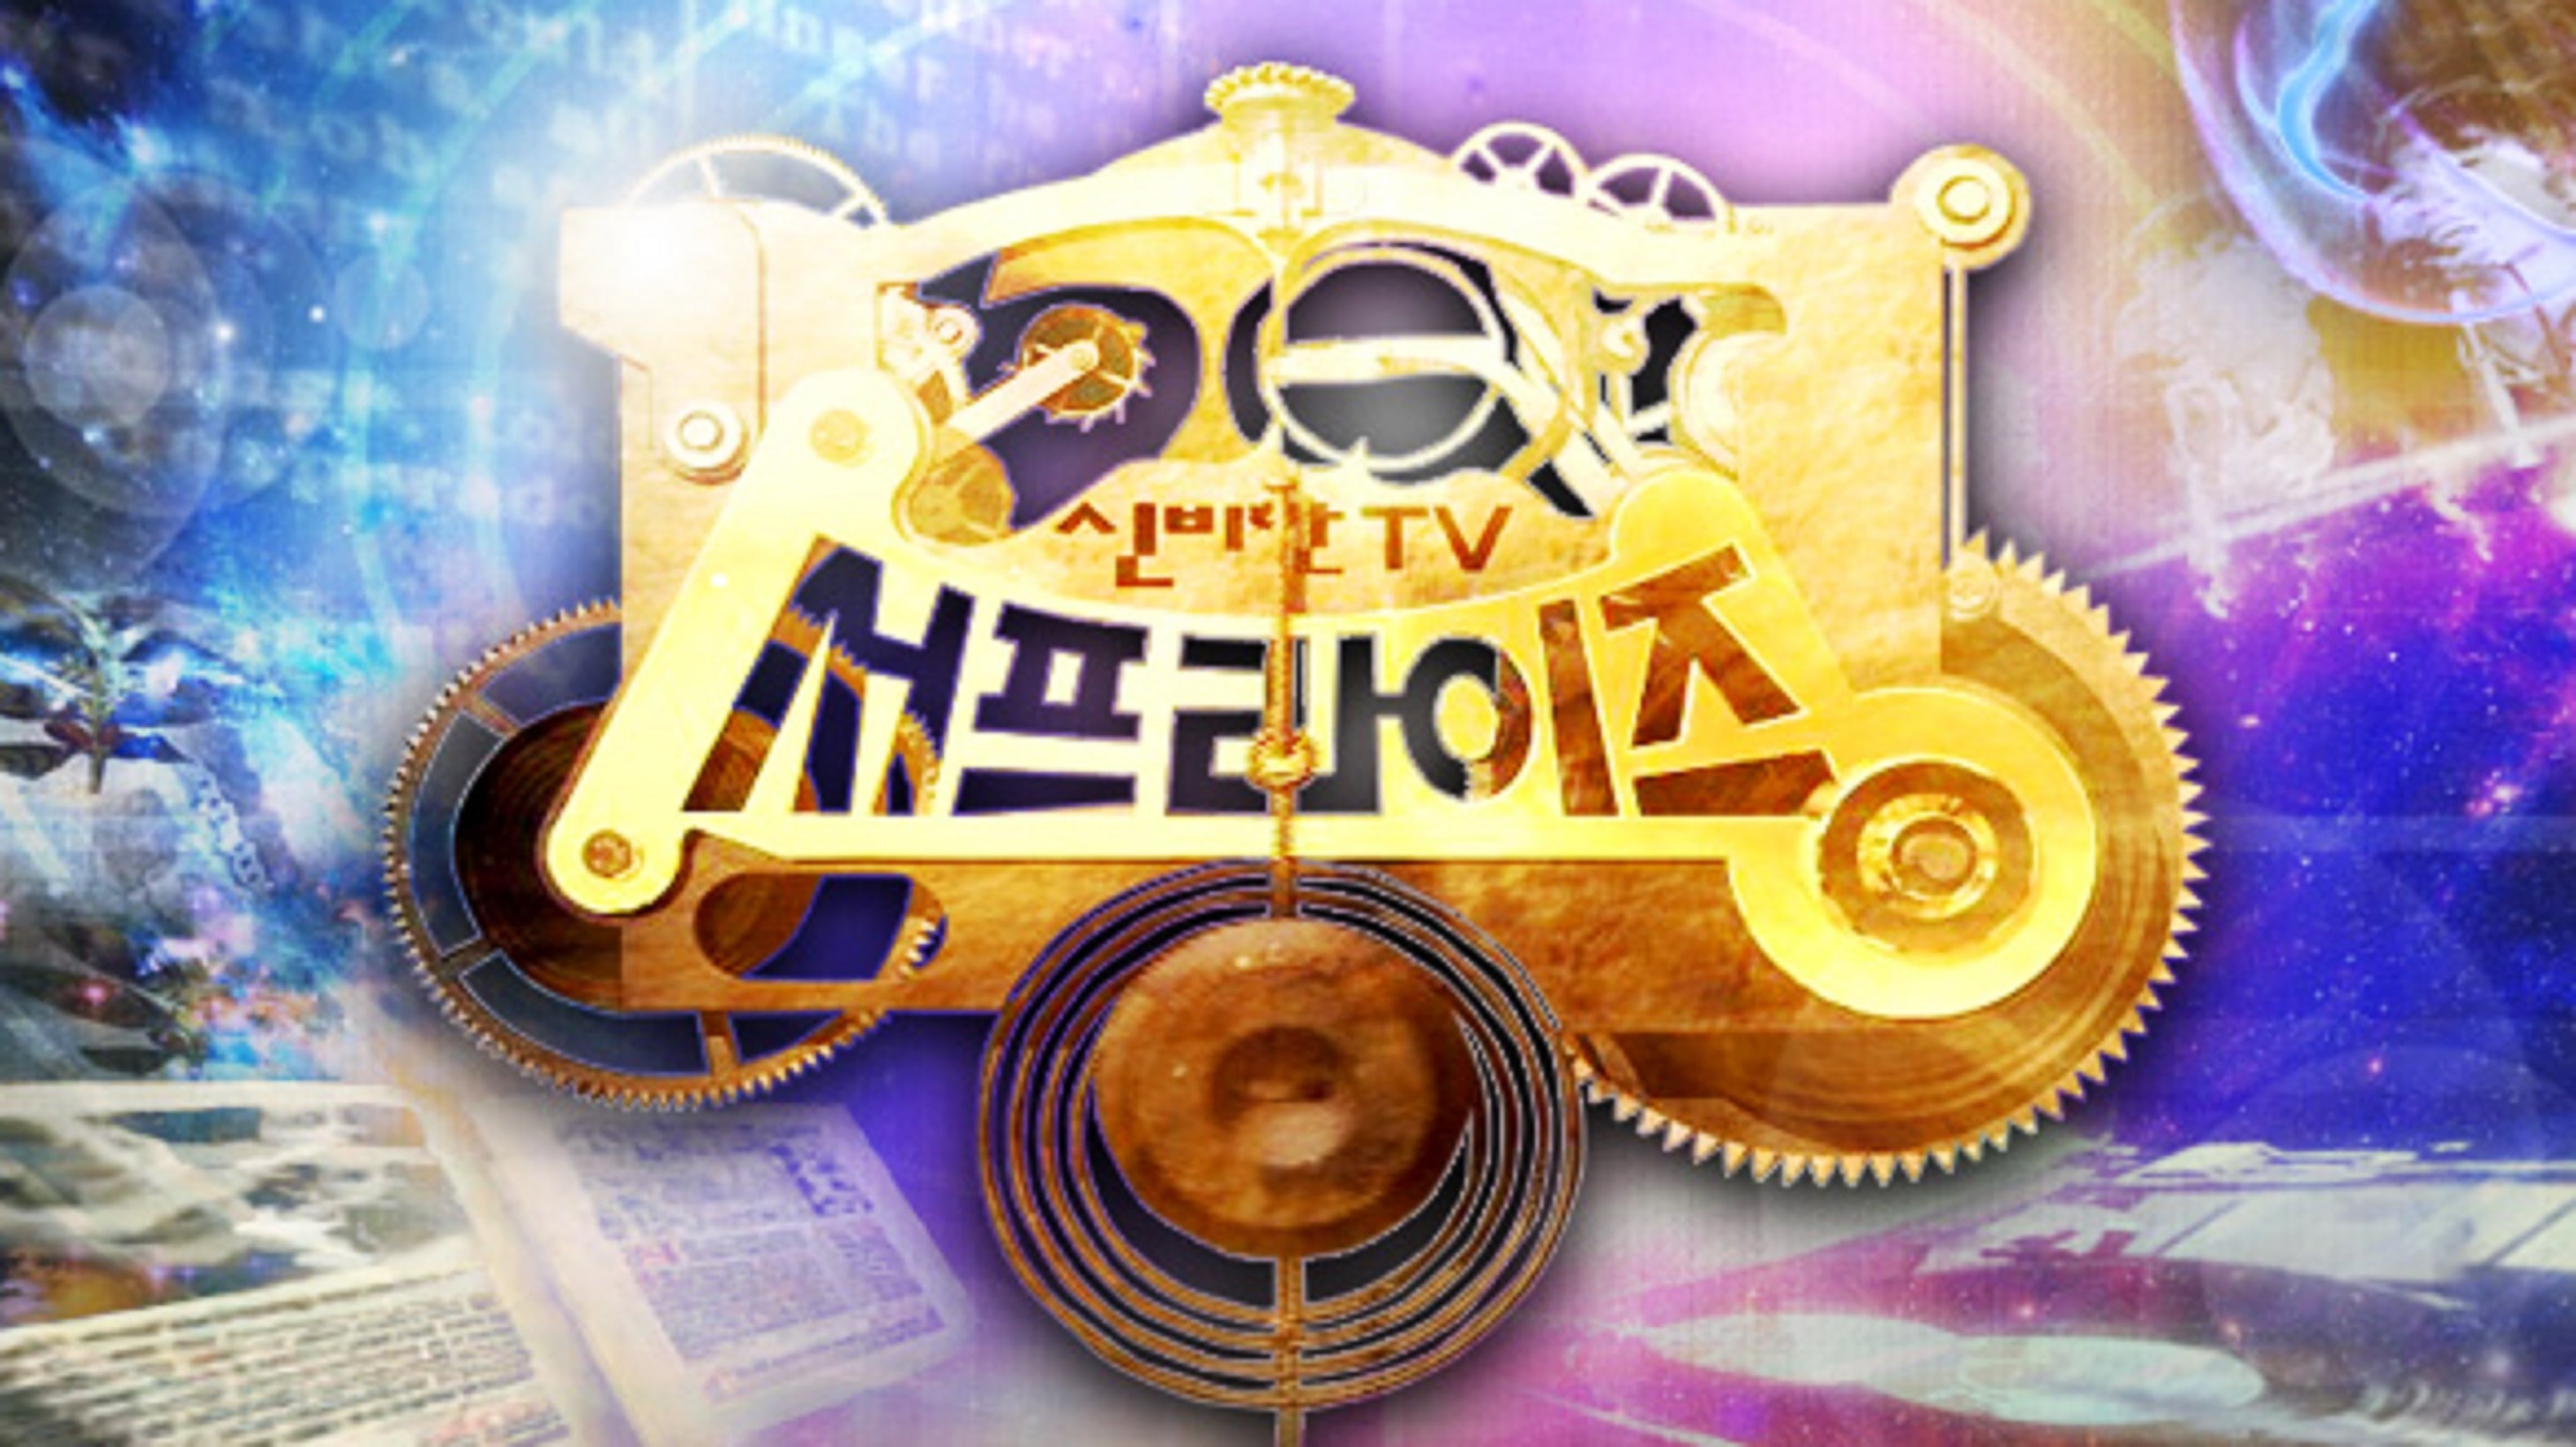 신비한 TV 서프라이즈 - Season 1 Episode 1060